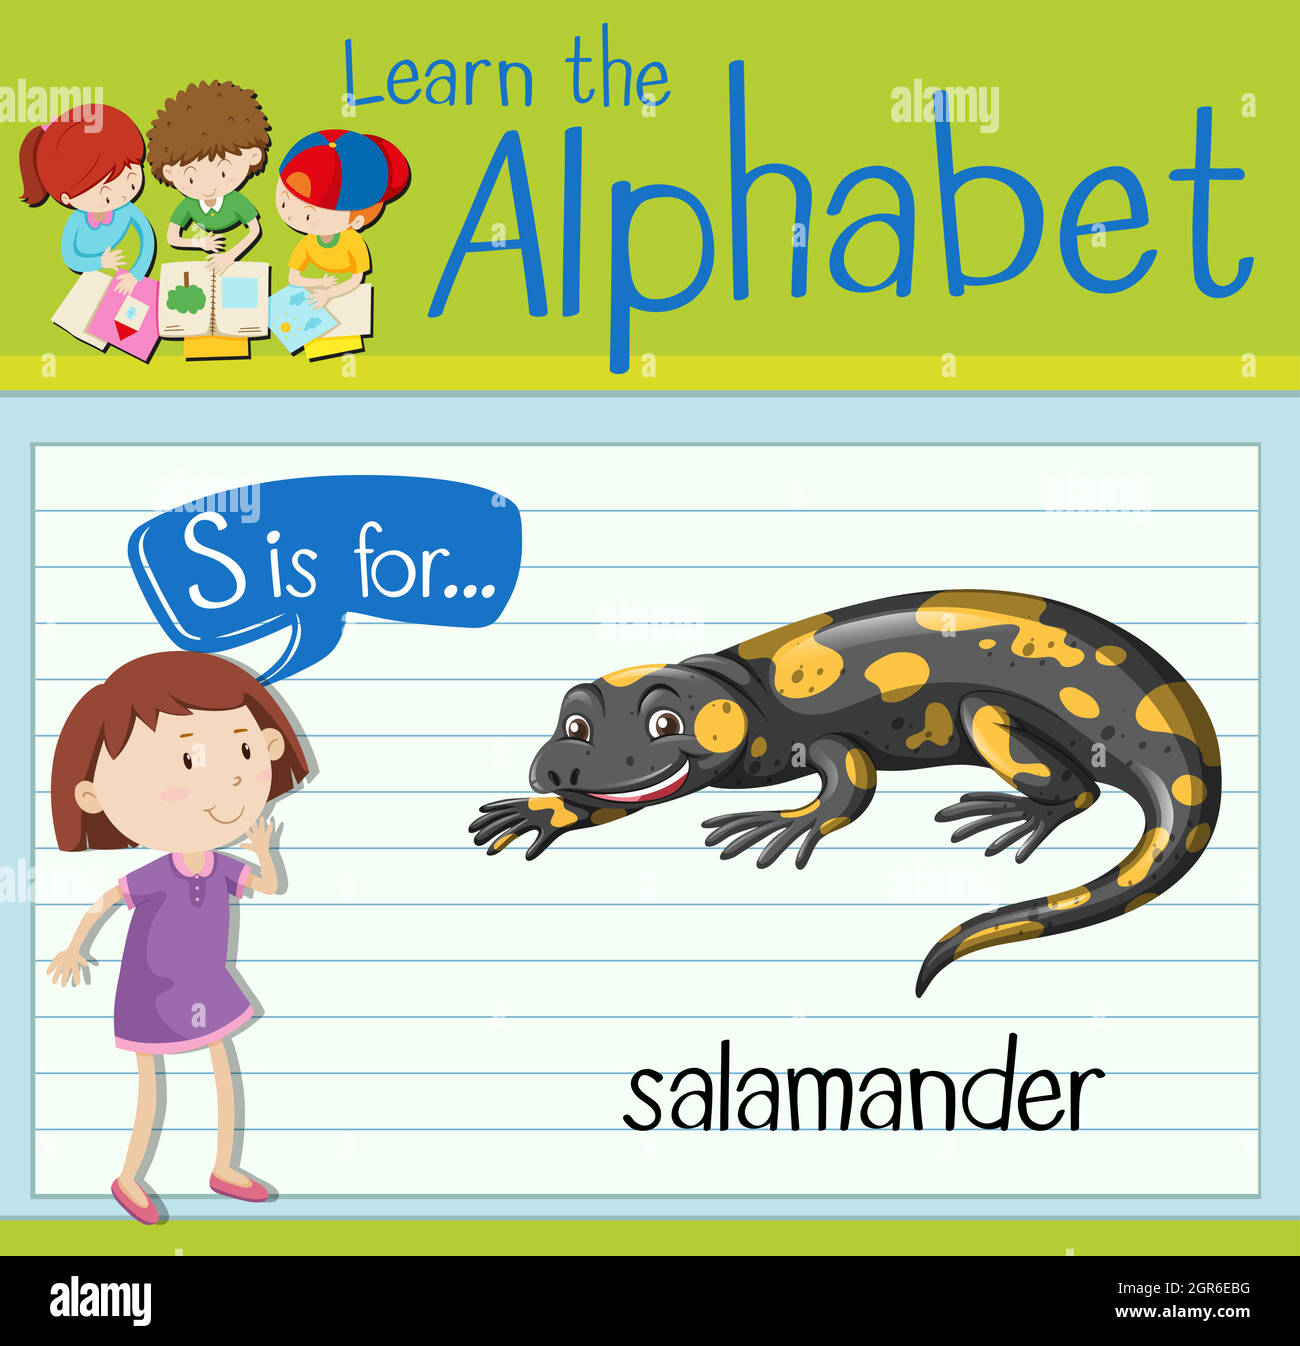 La lettre S de la carte mémoire est destinée à la salamandre Illustration de Vecteur